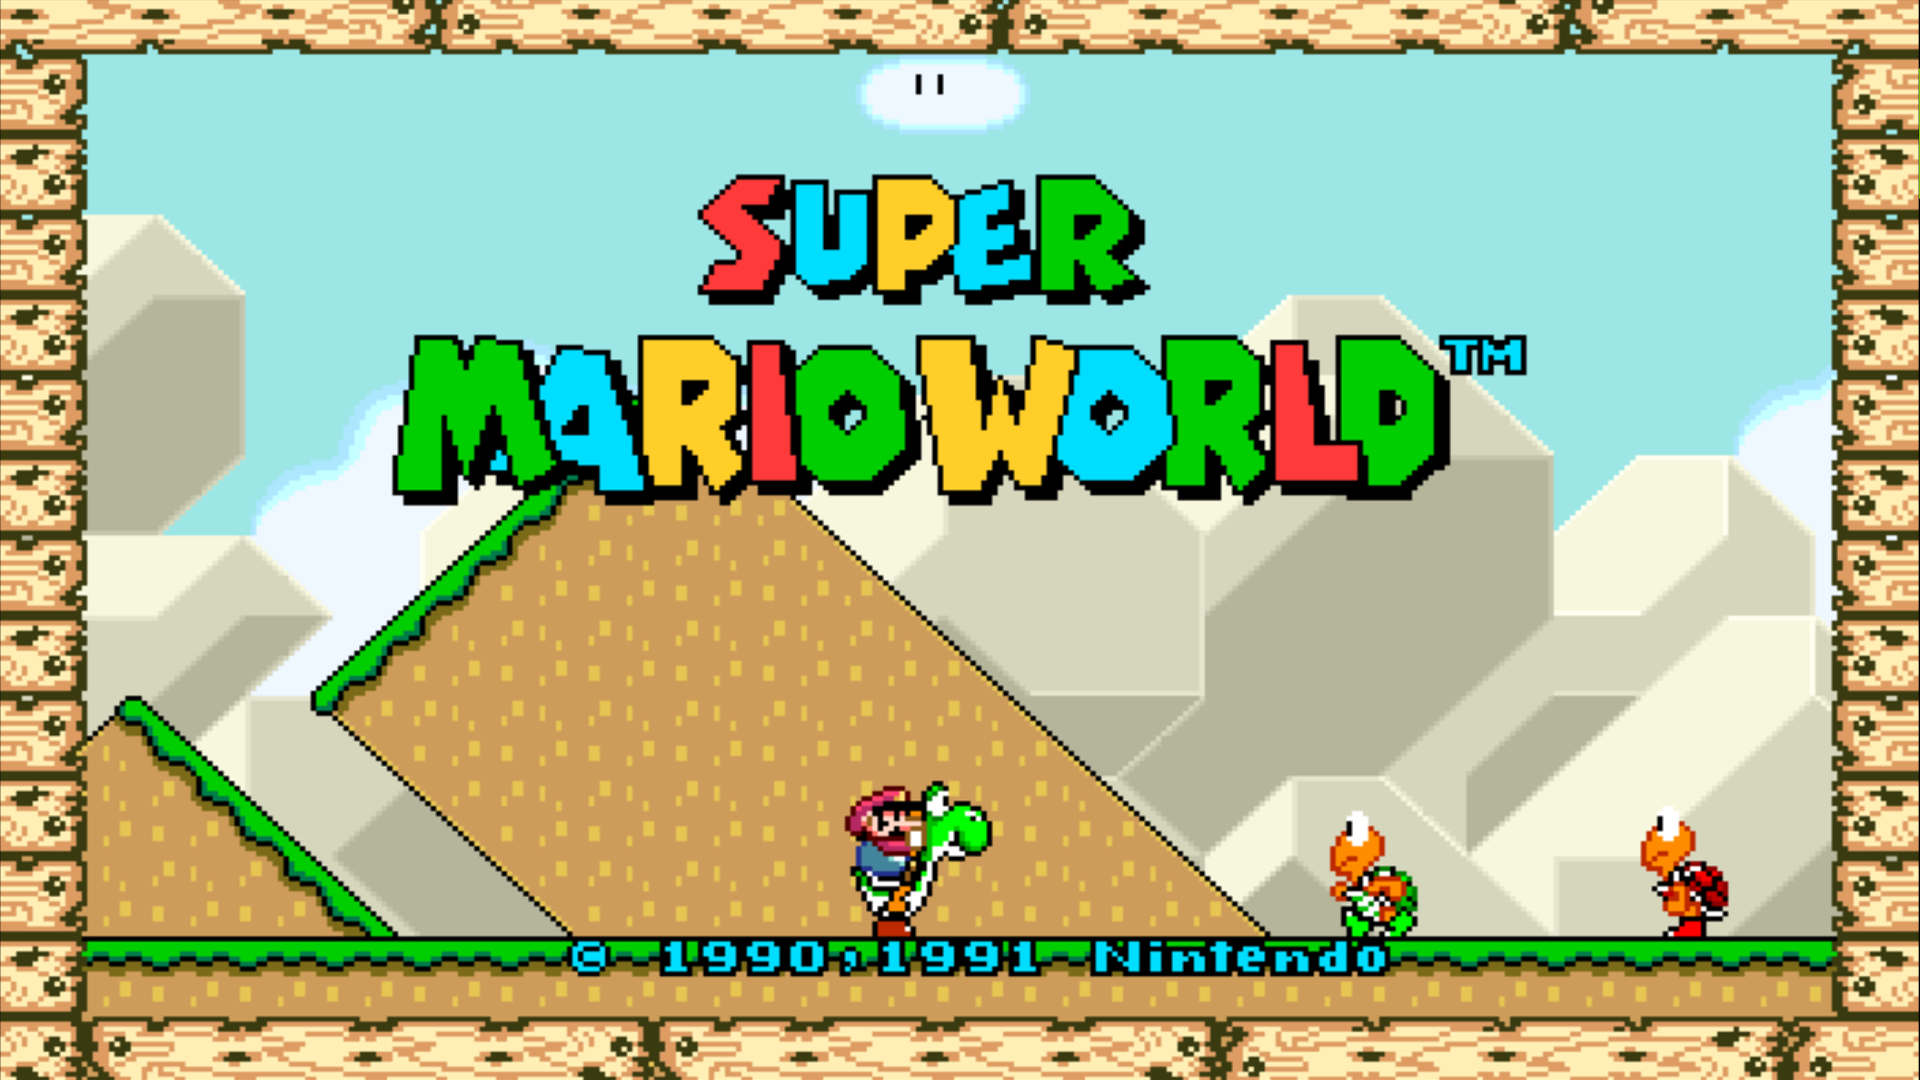 Velhos Tempos - Os tipos de Yoshi do Super Mario World